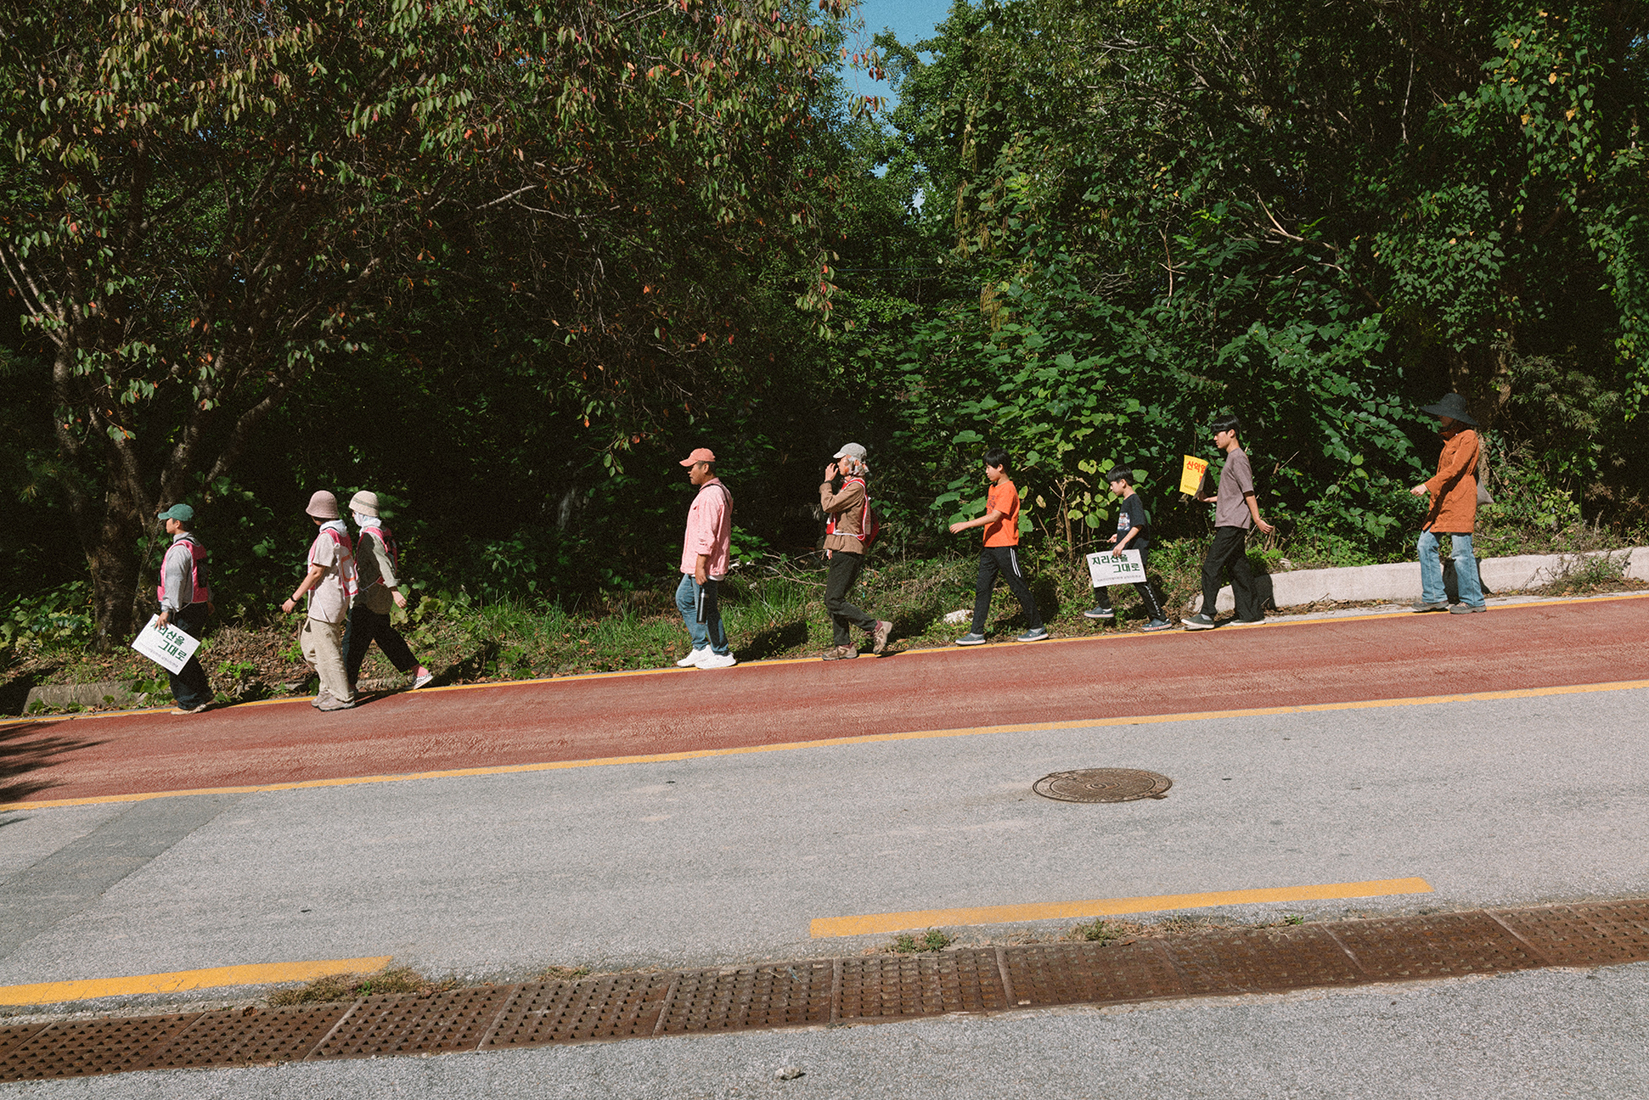 내리막 도로 옆으로 몇몇 사람들이 걸어 내려오고 있다. 사람들 손과 몸에는 ‘지리산 그대로’, ‘산악열차 백지화’ 등의 문구가 적힌 피켓과 배너가 있다. 도로 옆으로는 풀과 나무가 우거져있다. 